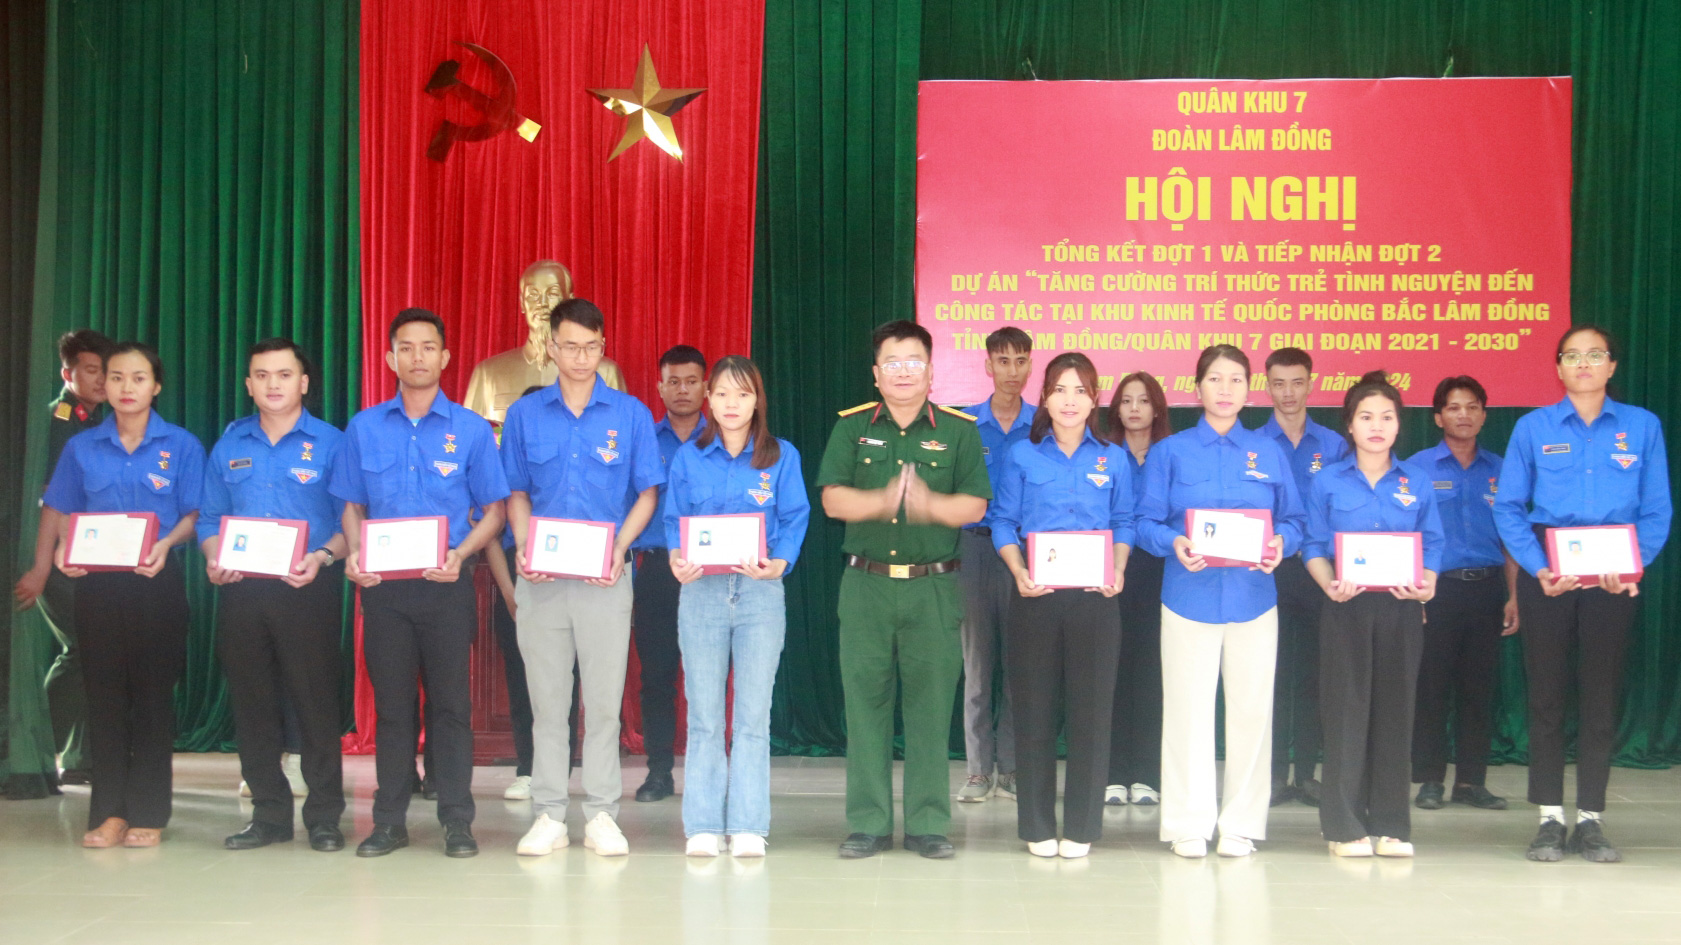 Đại tá Hoàng Việt Thắng - đại diện Cục Kinh tế, Bộ Quốc phòng trao Giấy chứng nhận cho đội viên trí thức trẻ tình nguyện